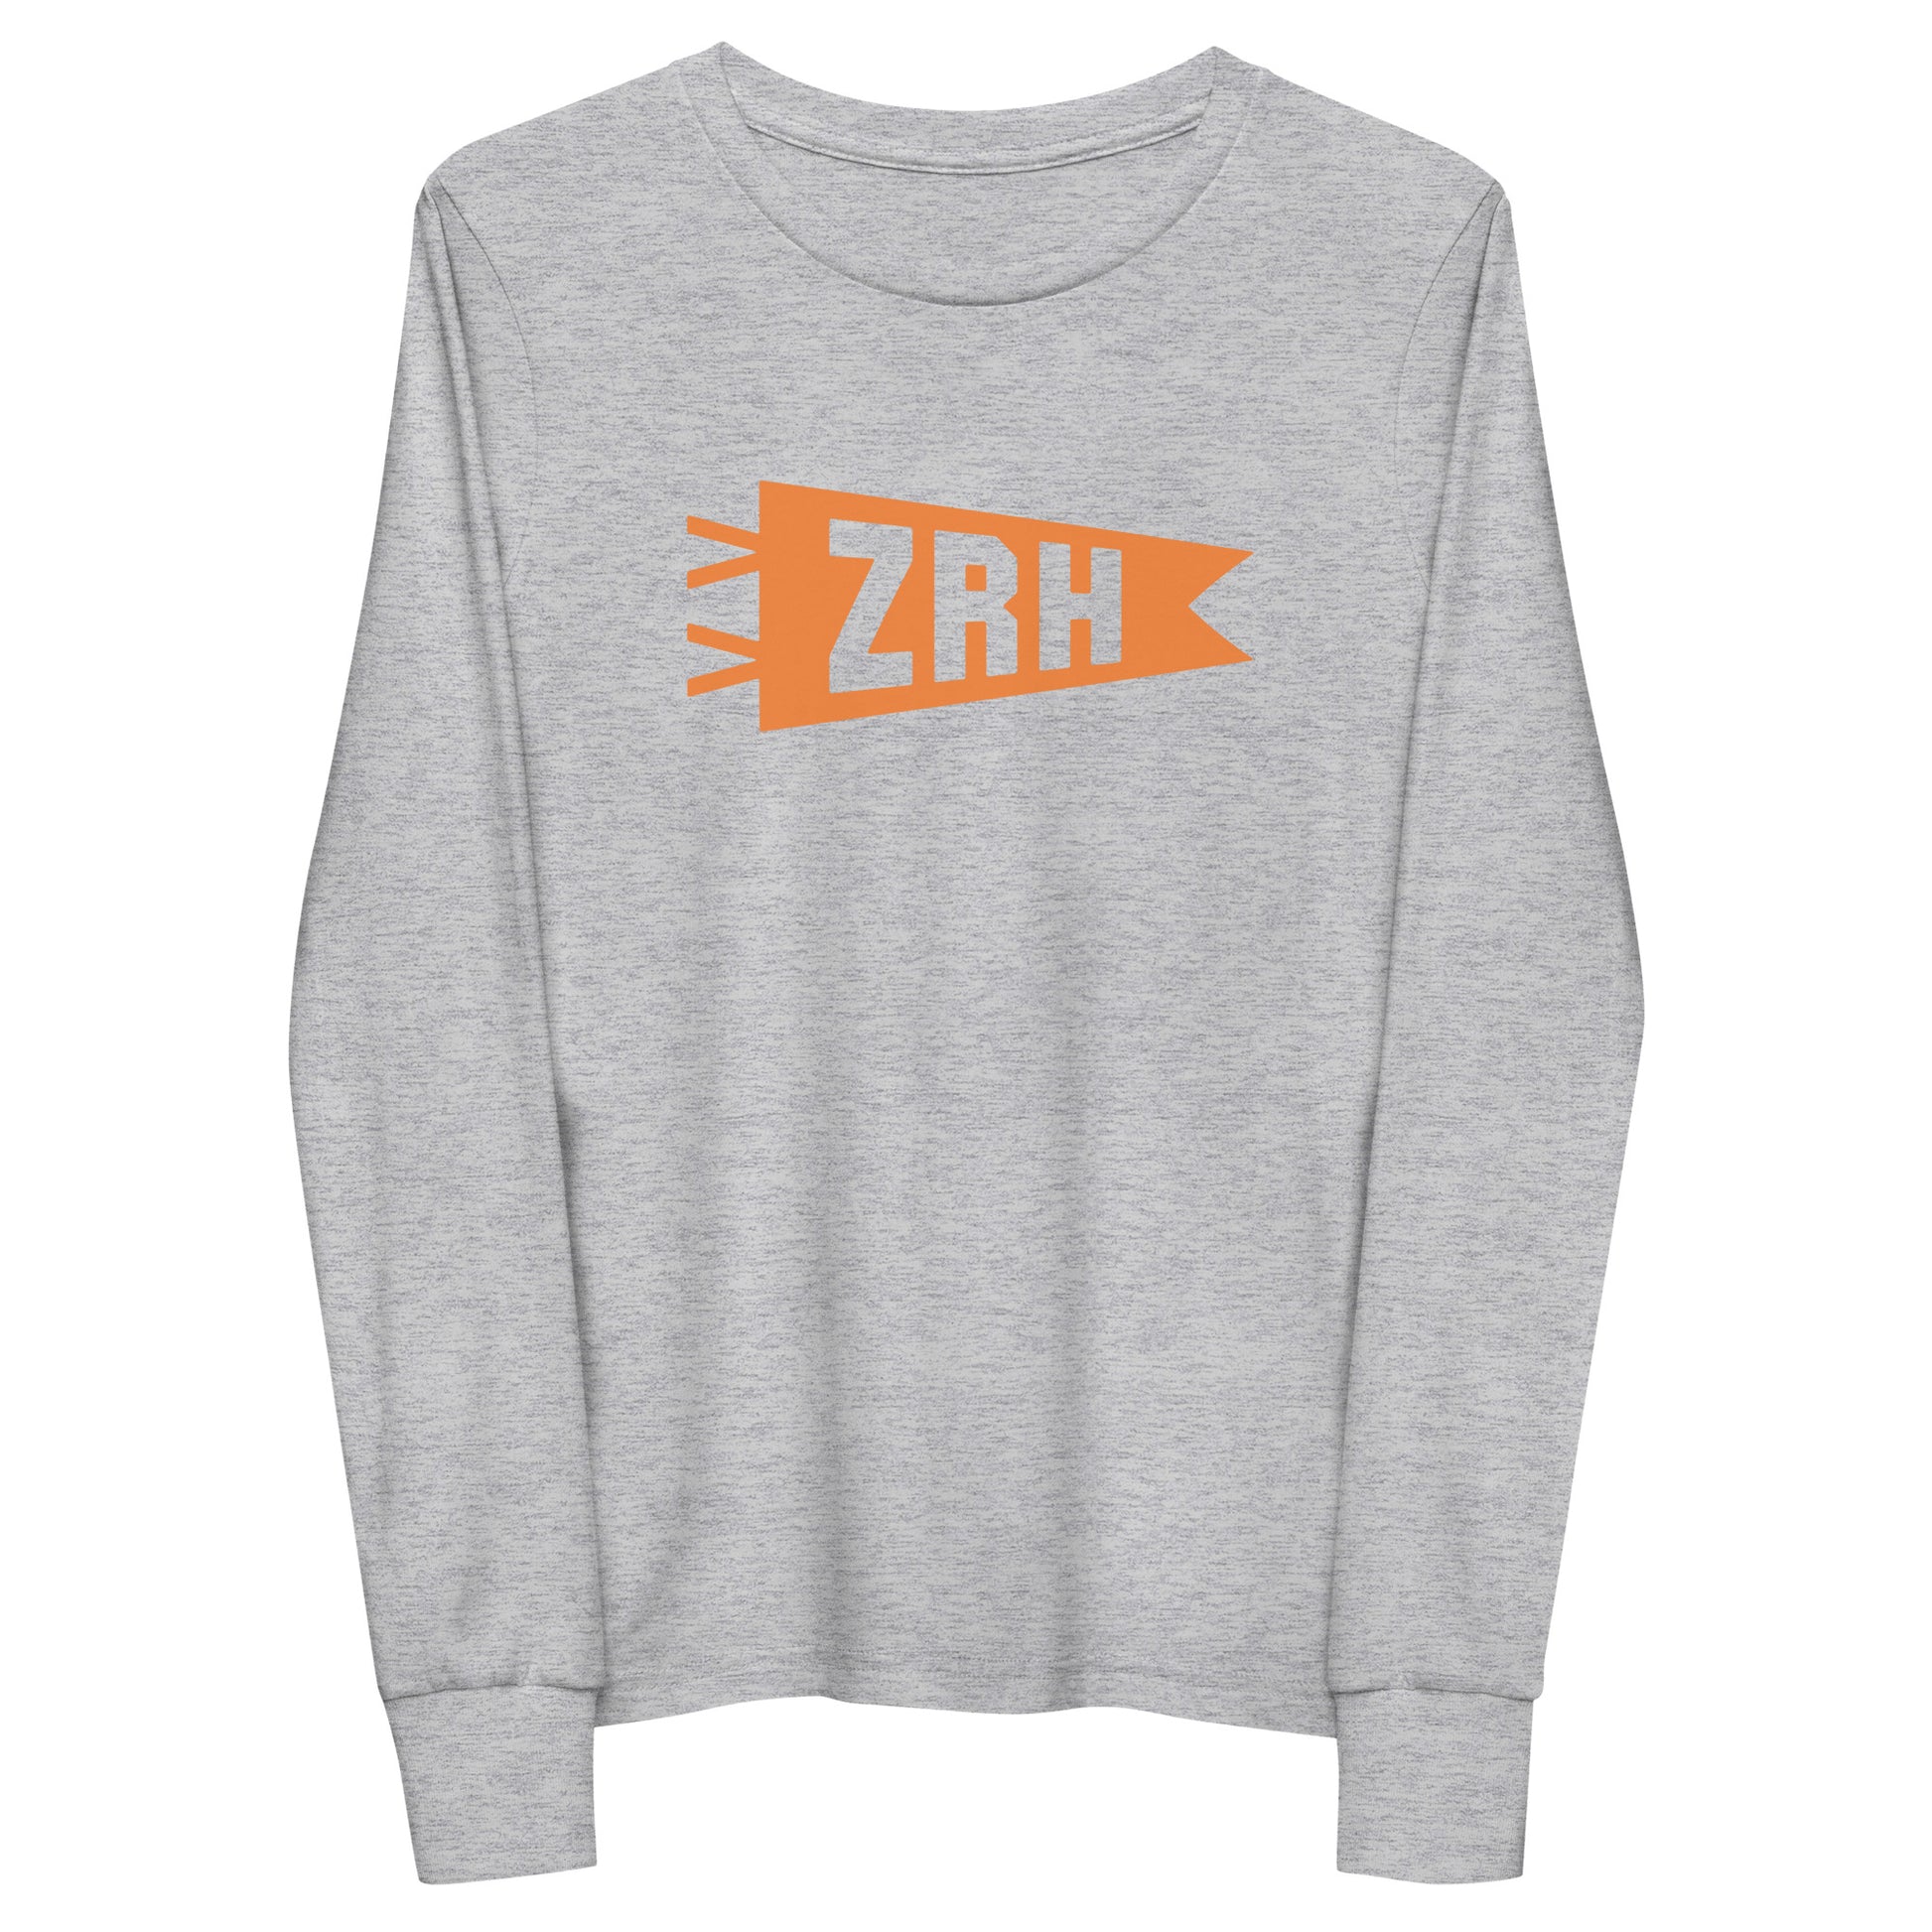 Kid's Airport Code Long-Sleeve Tee - Orange Graphic • ZRH Zurich • YHM Designs - Image 11